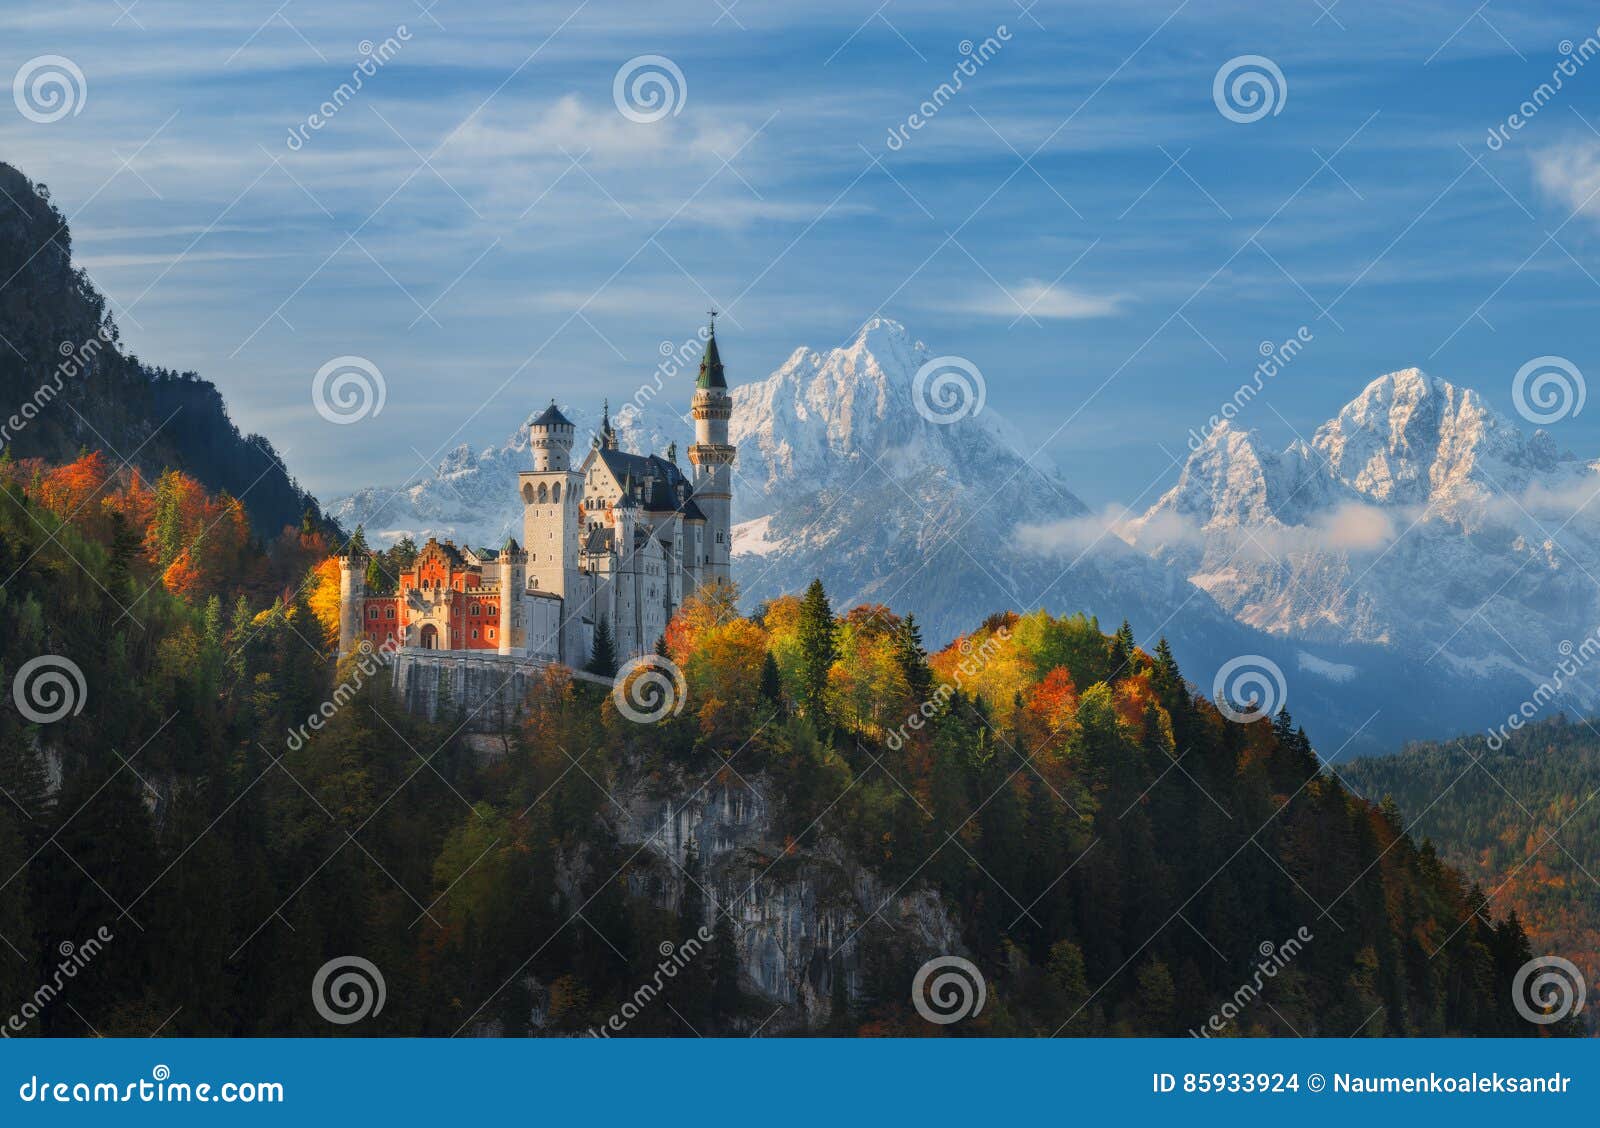 panorama neuschwanstein castle